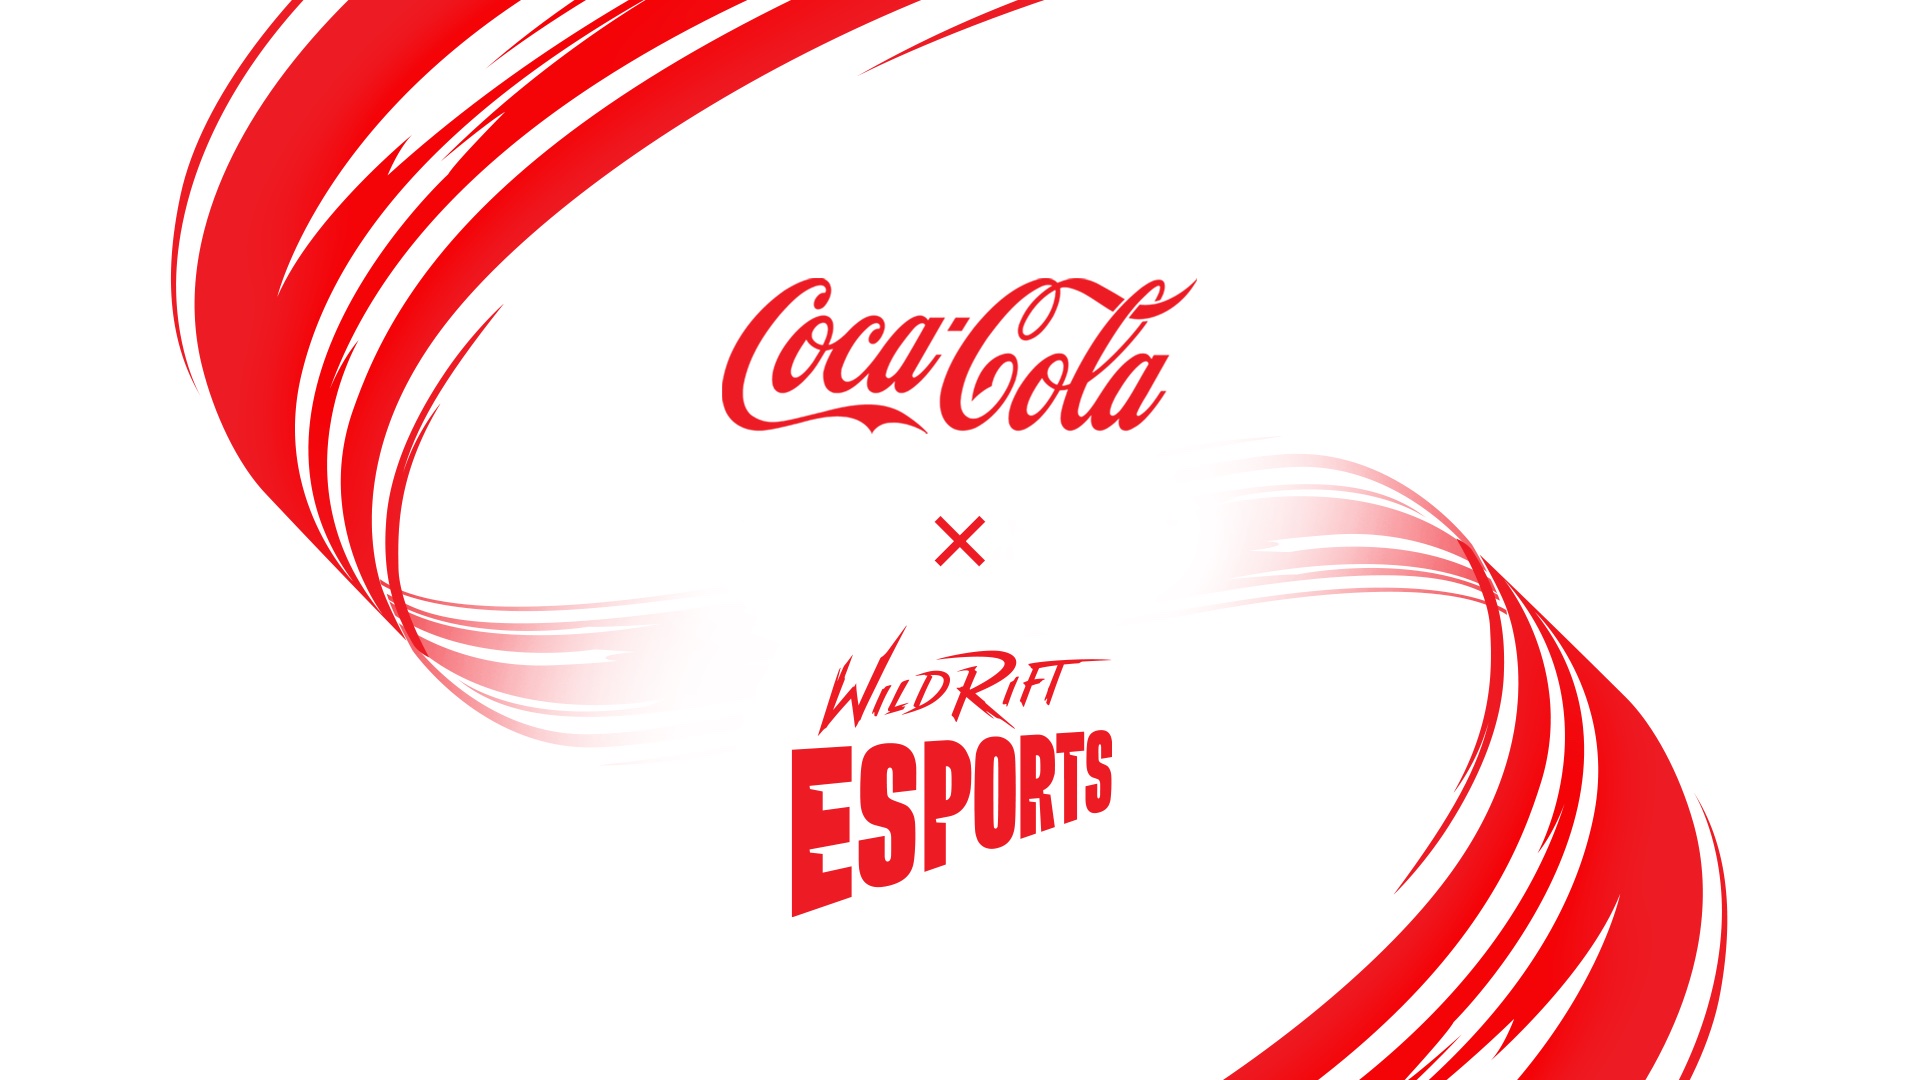 와일드 리프트 e스포츠, 코카 콜라를 전 세계 창설 파트너로 선정